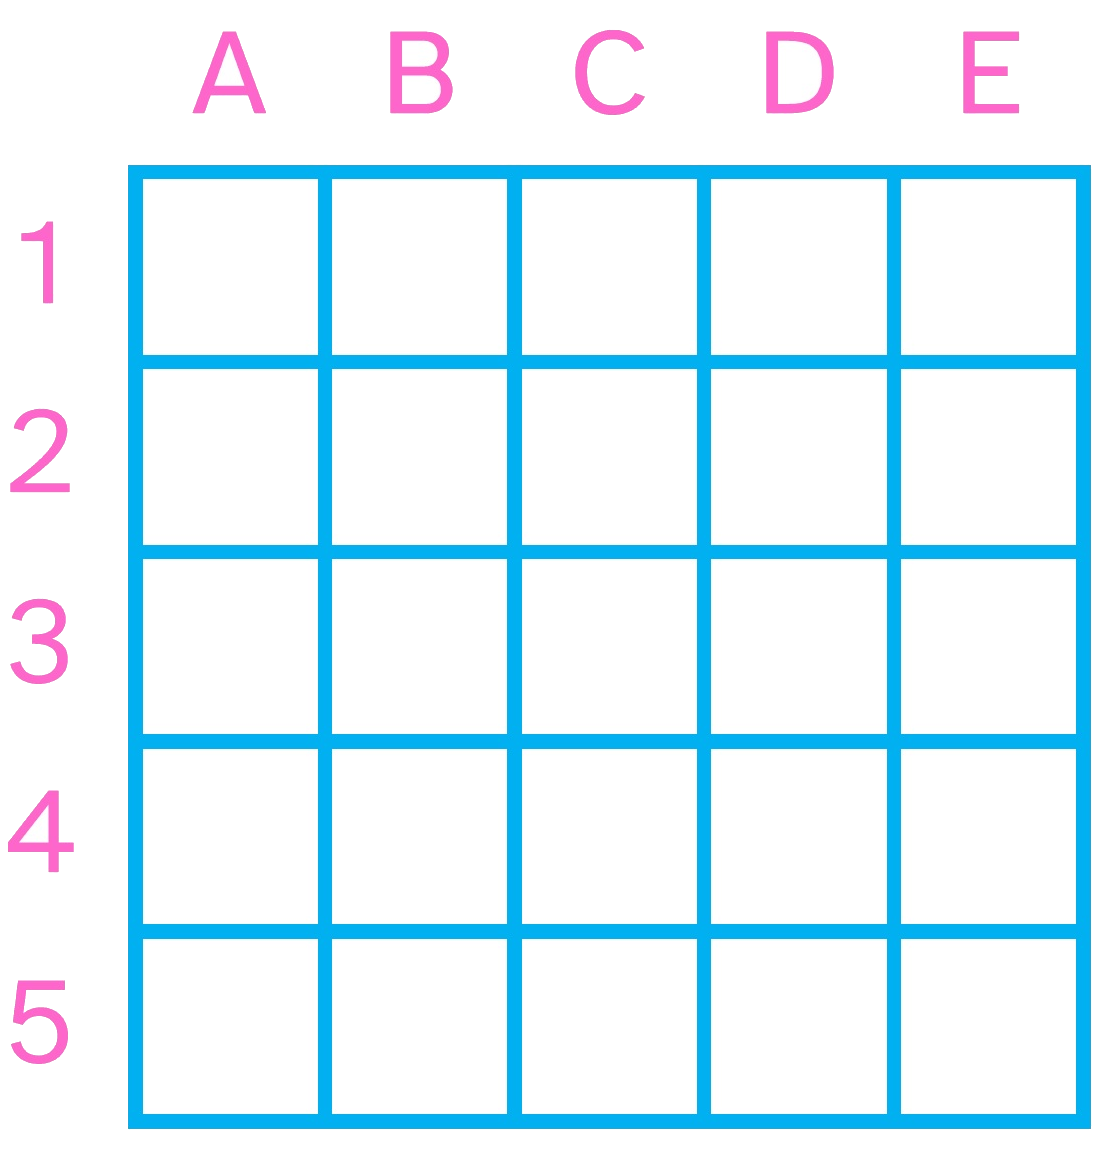 La imagen muestra una cuadrícula de 5x5 de color azul, con las filas nombradas con números y las columnas con letras